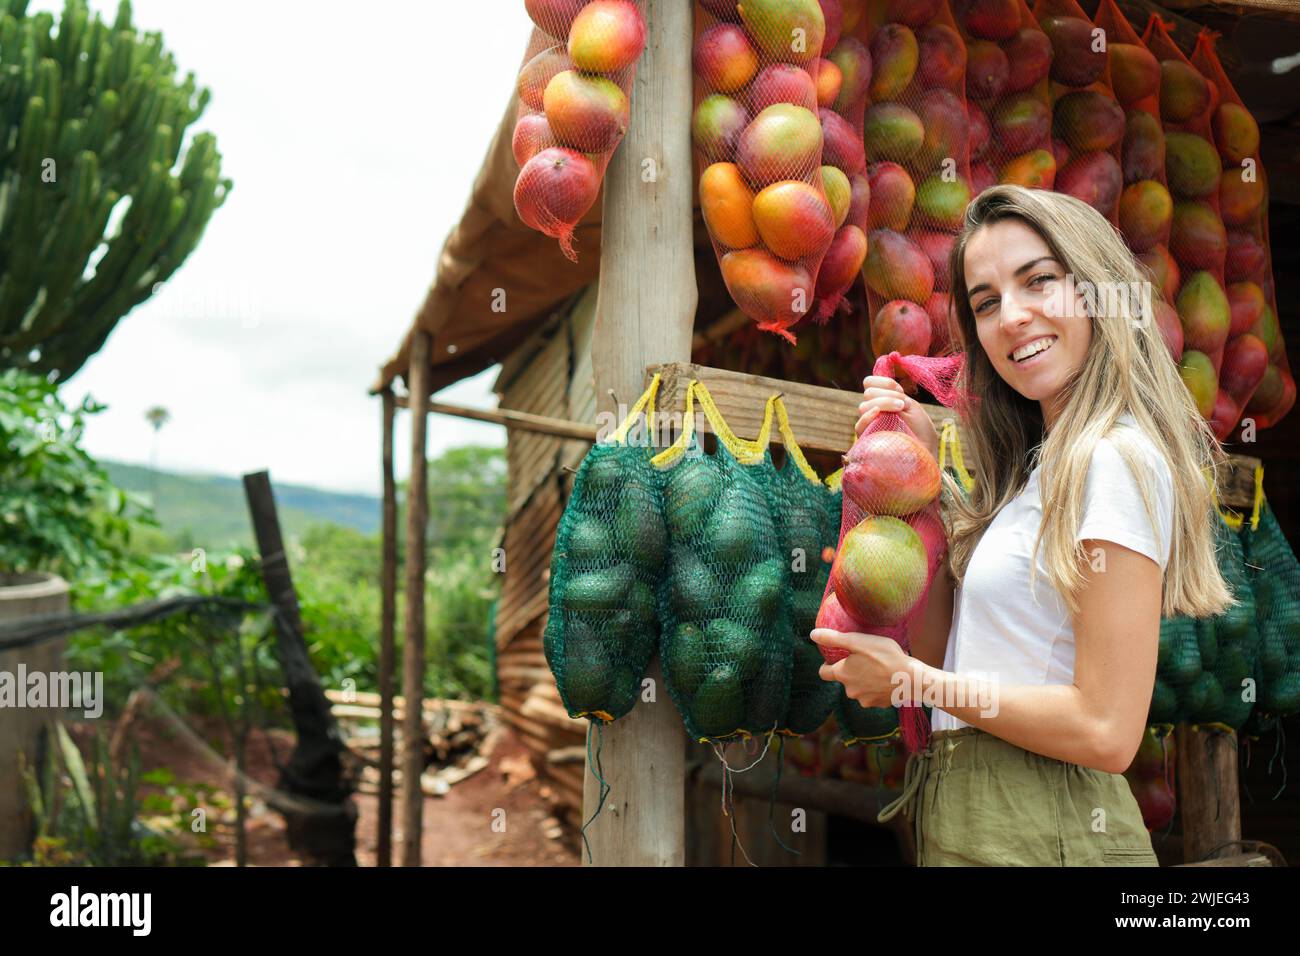 Si vede una donna felice che acquista mango maturo da una bancarella di frutta colorata lungo una strada di campagna in Africa, incarnando la vivacità dei mercati locali. Foto Stock